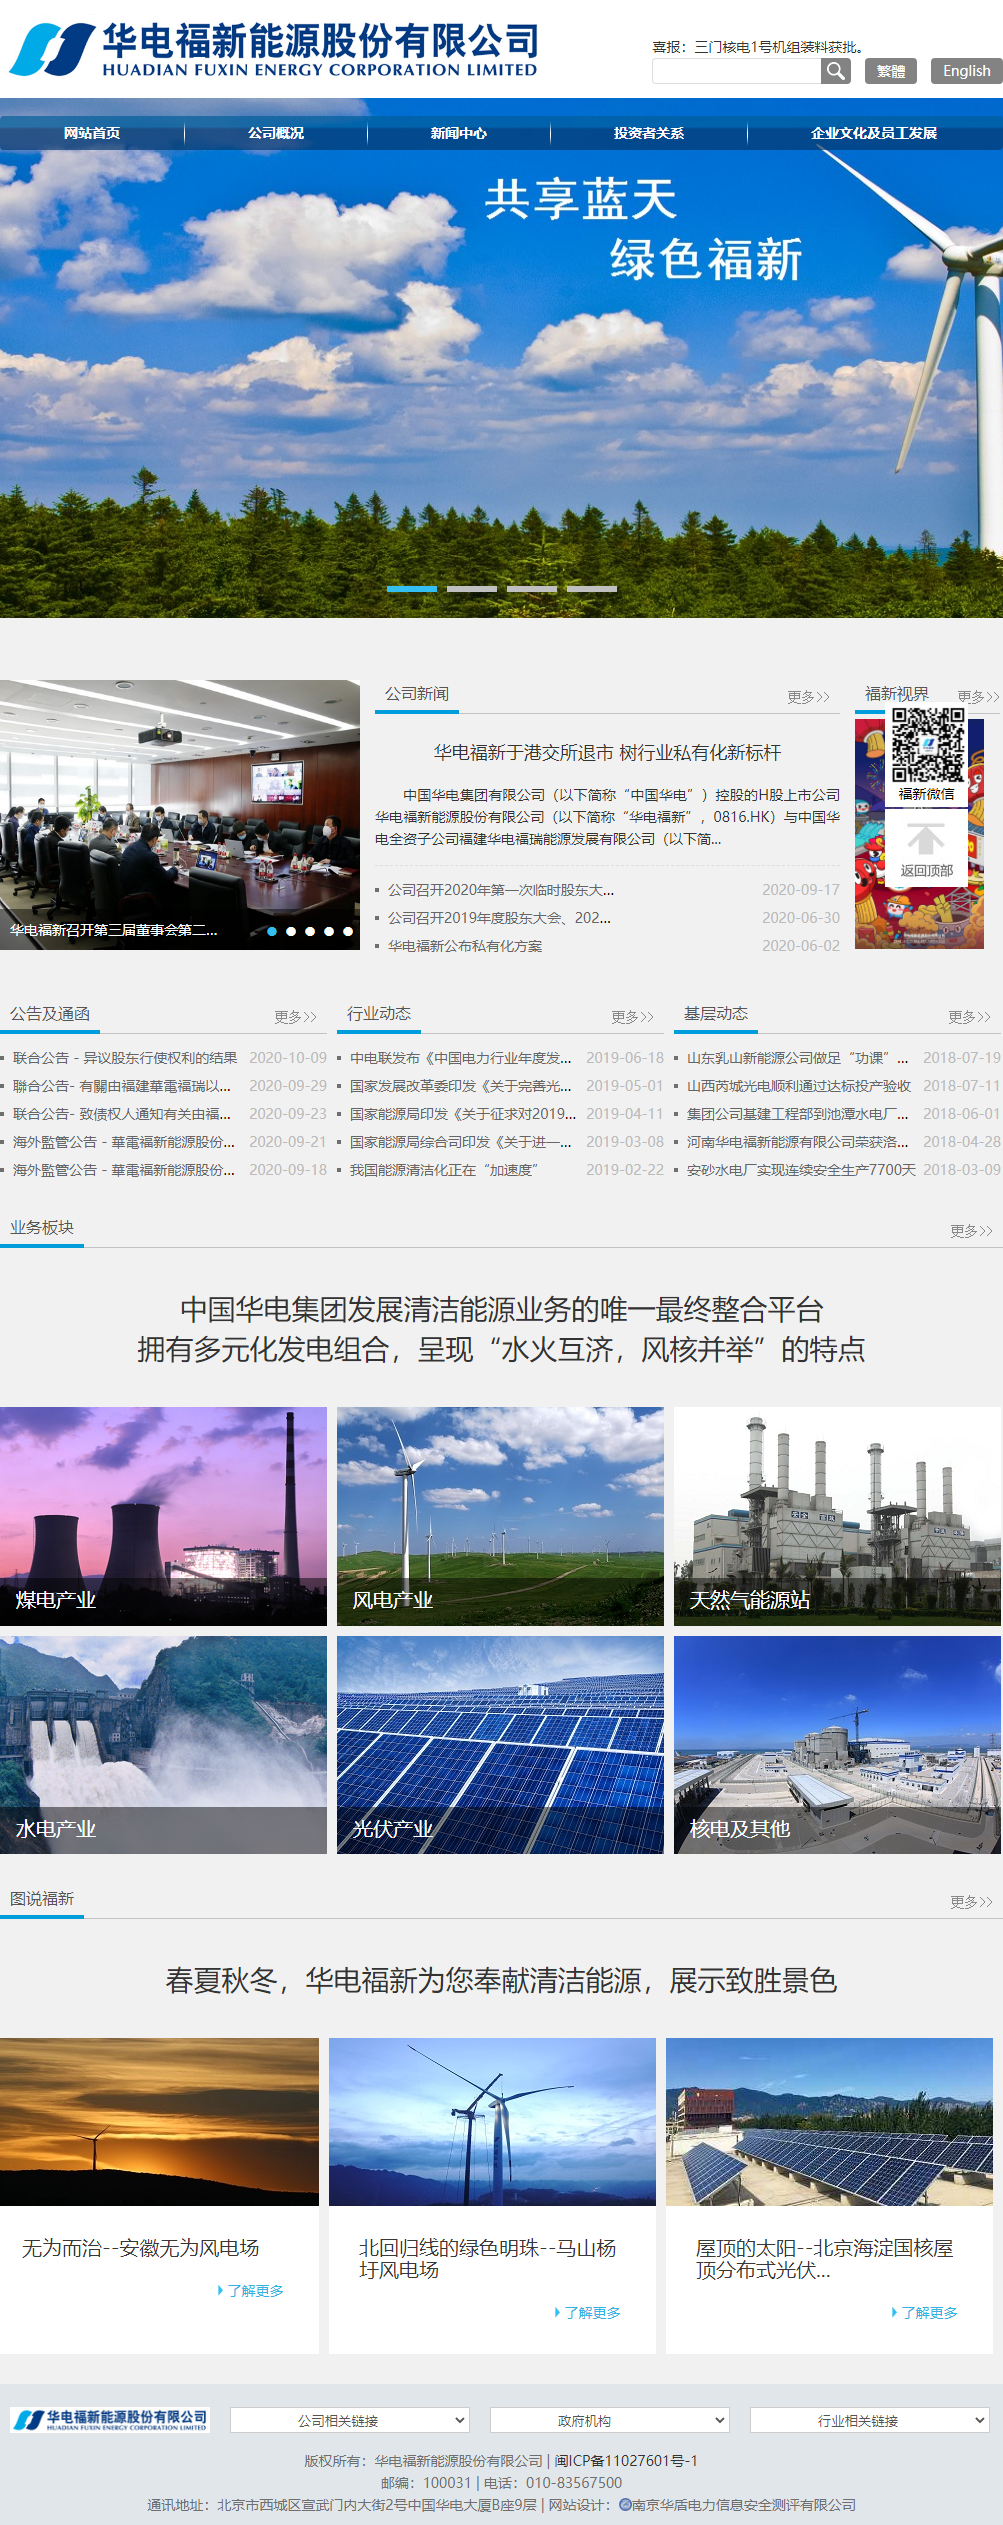 华电福新能源有限公司网站案例